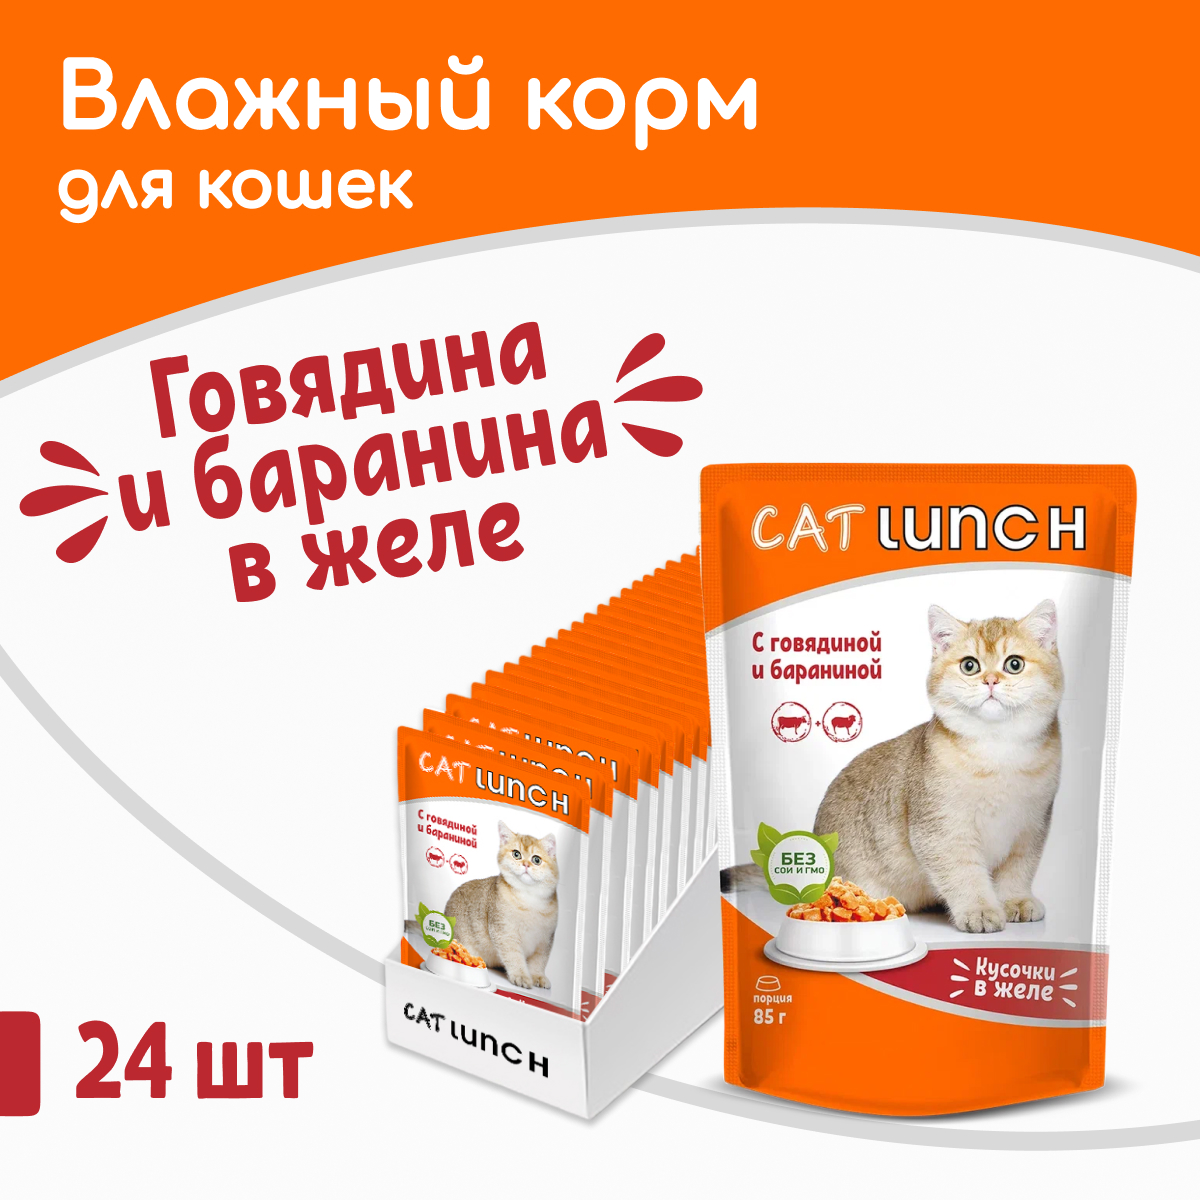 Влажный корм для кошек Cat Lunch говядина и баранина, 24шт по 85г